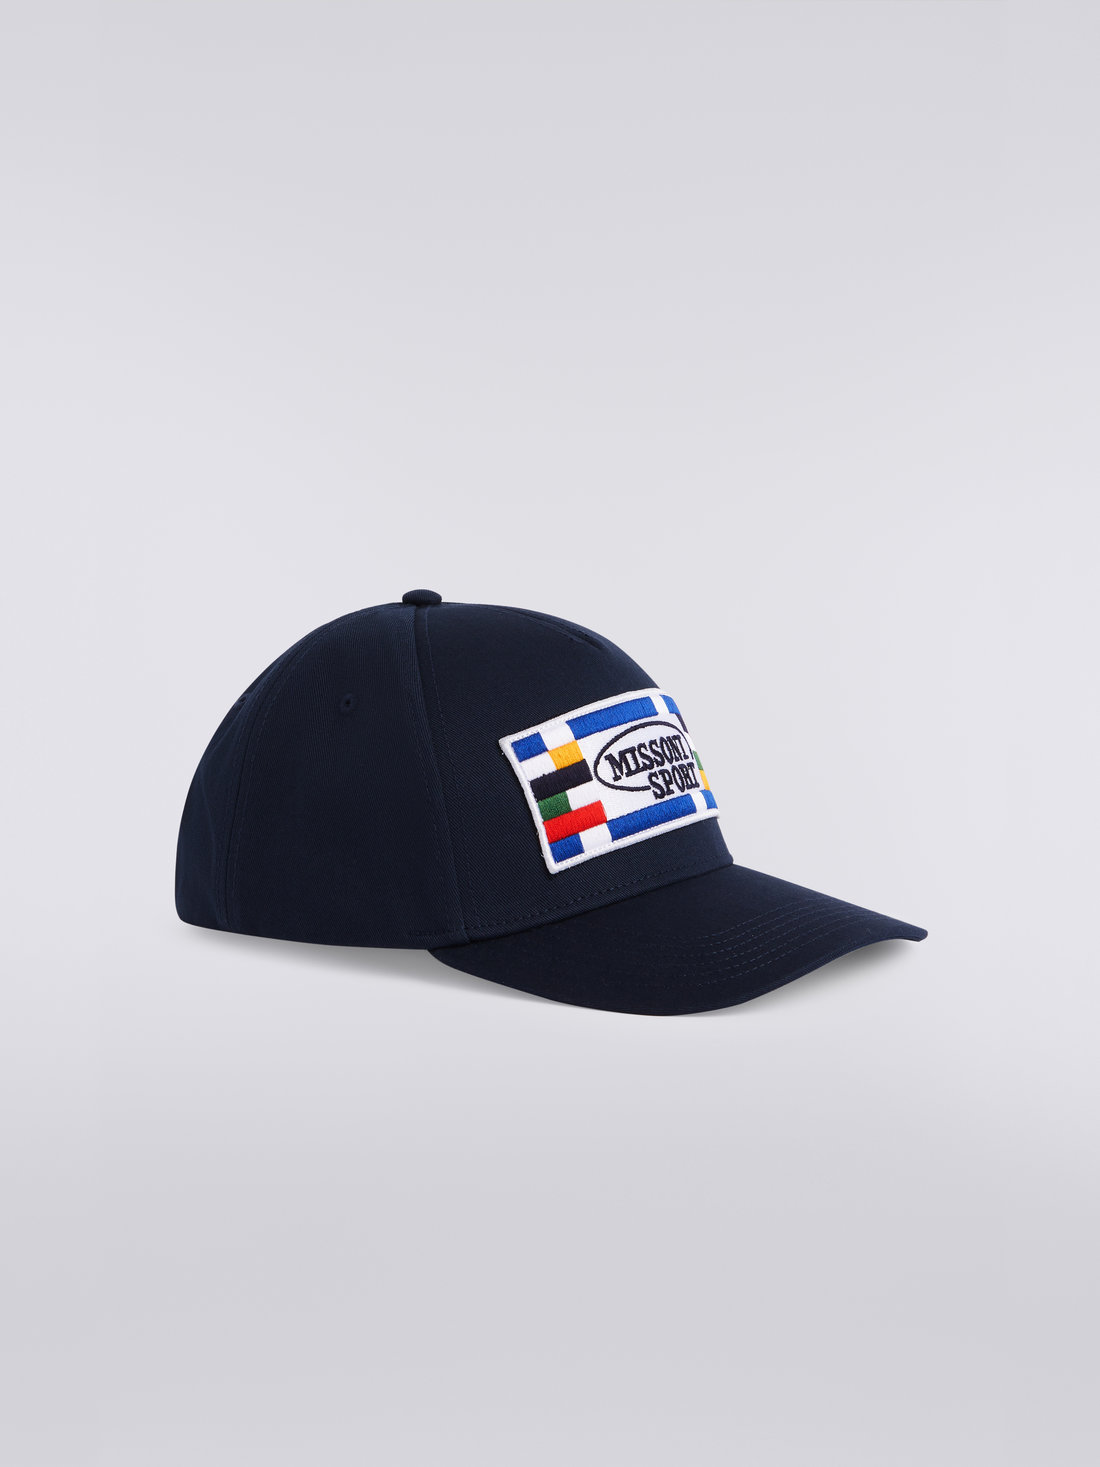 Cotton baseball cap with logo, Navy Blue - 8051575742972 - 1